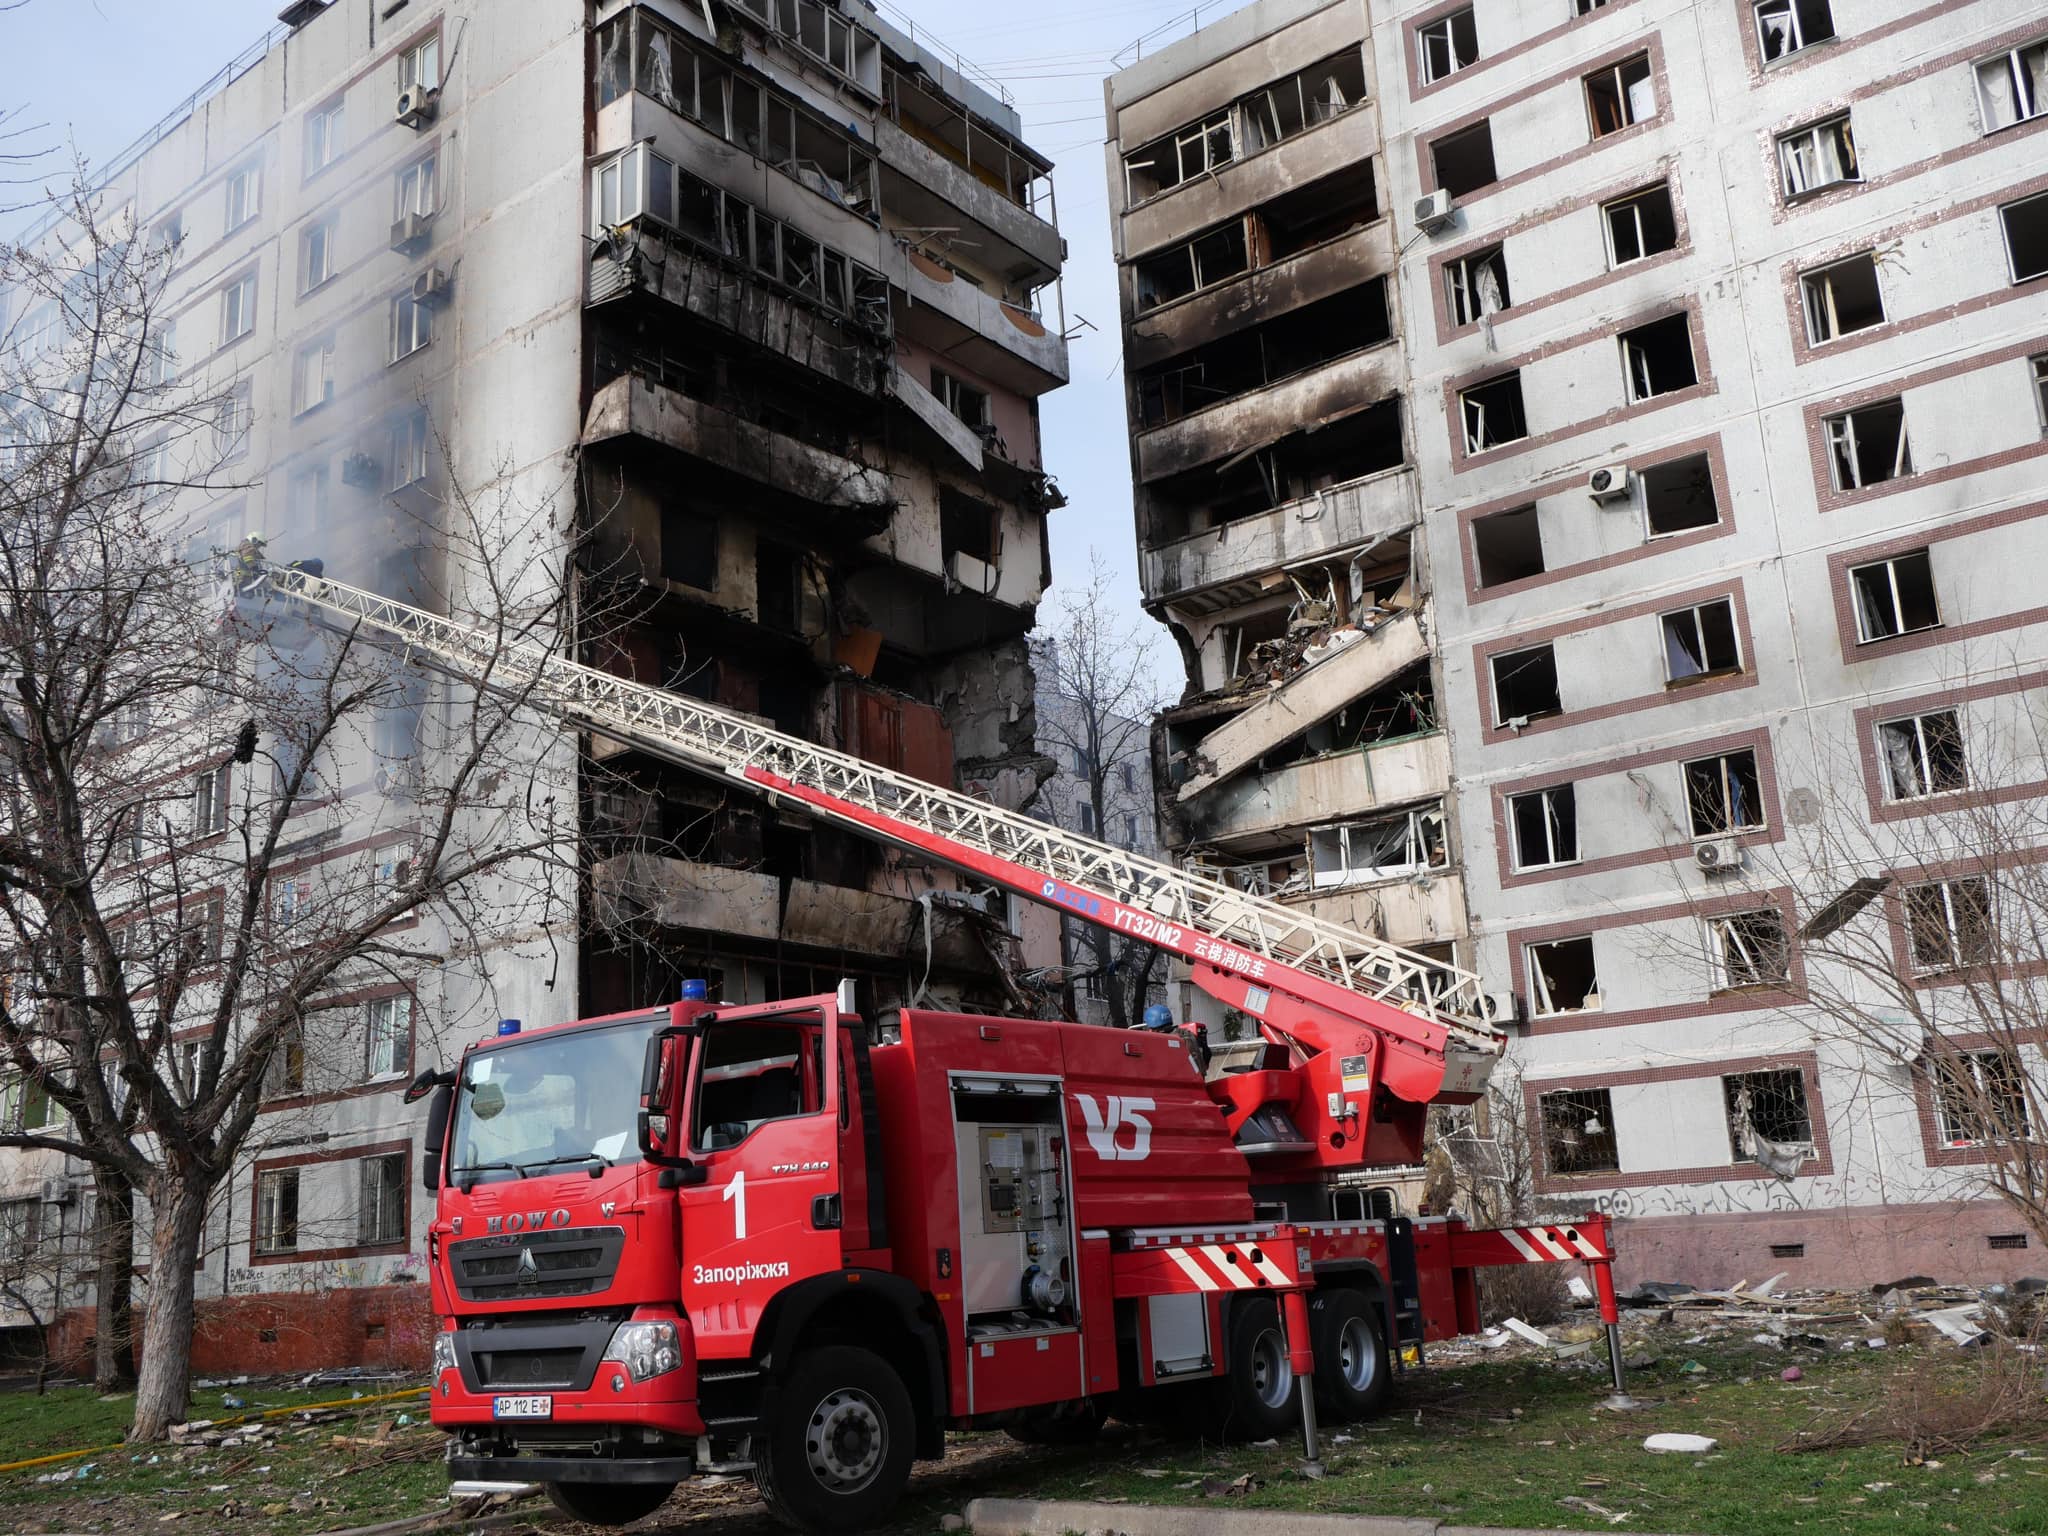 Рятувальна операція в Запоріжжі завершена: від російської атаки загалом 34 людини постраждали, з них троє дітей, одна людина померла (ФОТО) 1